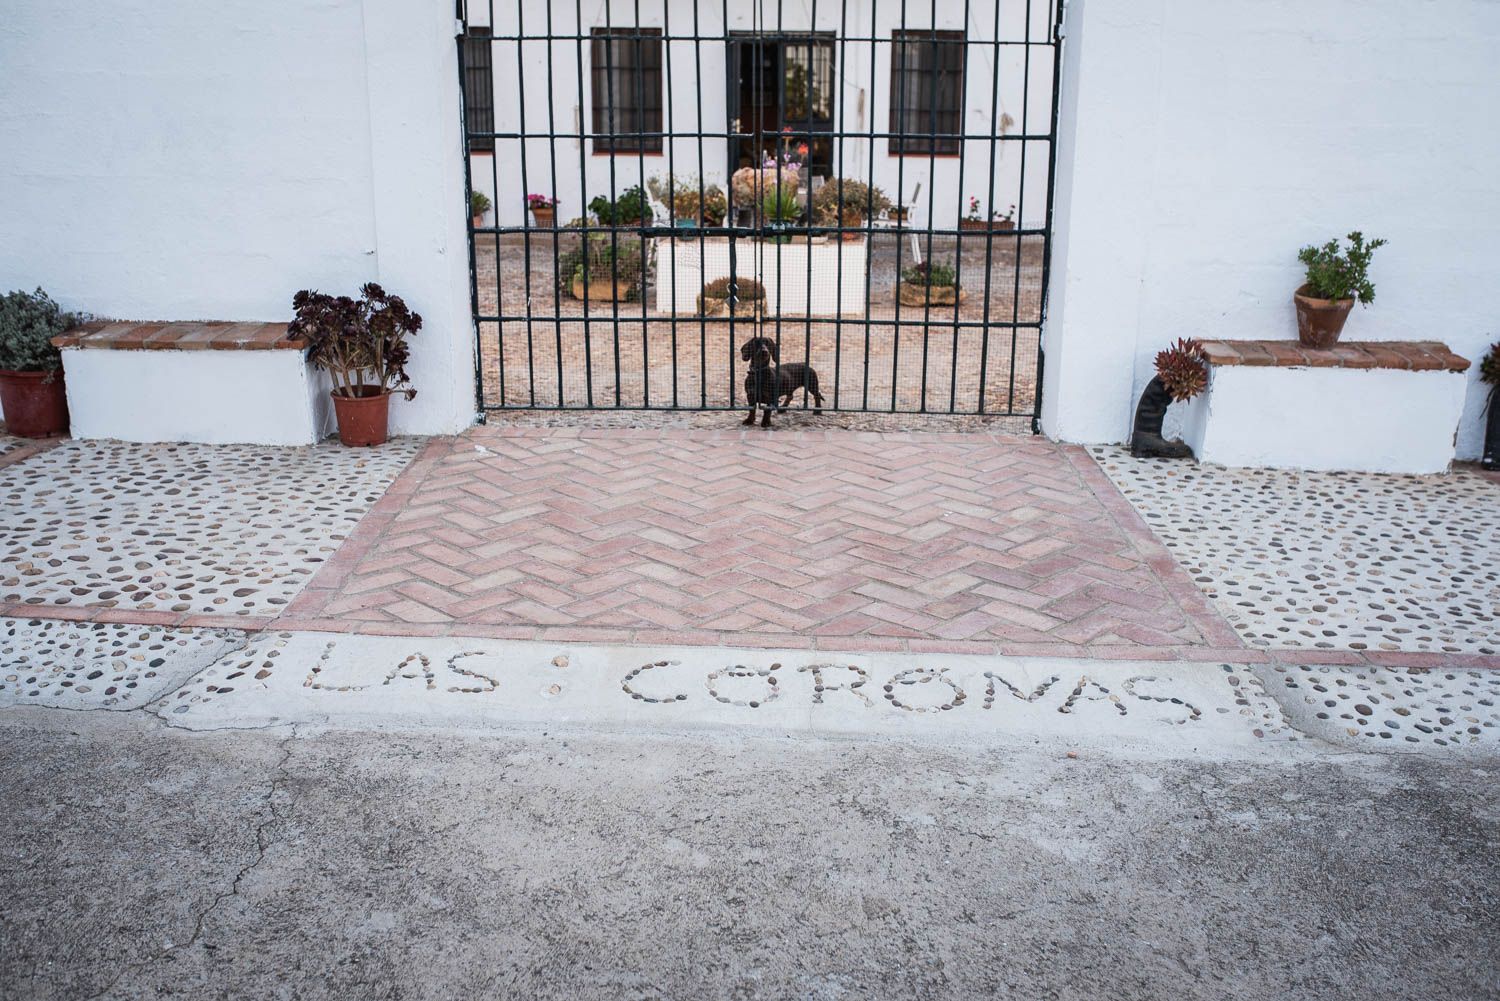 La finca Las Coronas, con lavanda, aloe vera, chopos y eucaliptos en plena campiña de Carmona, en imágenes.